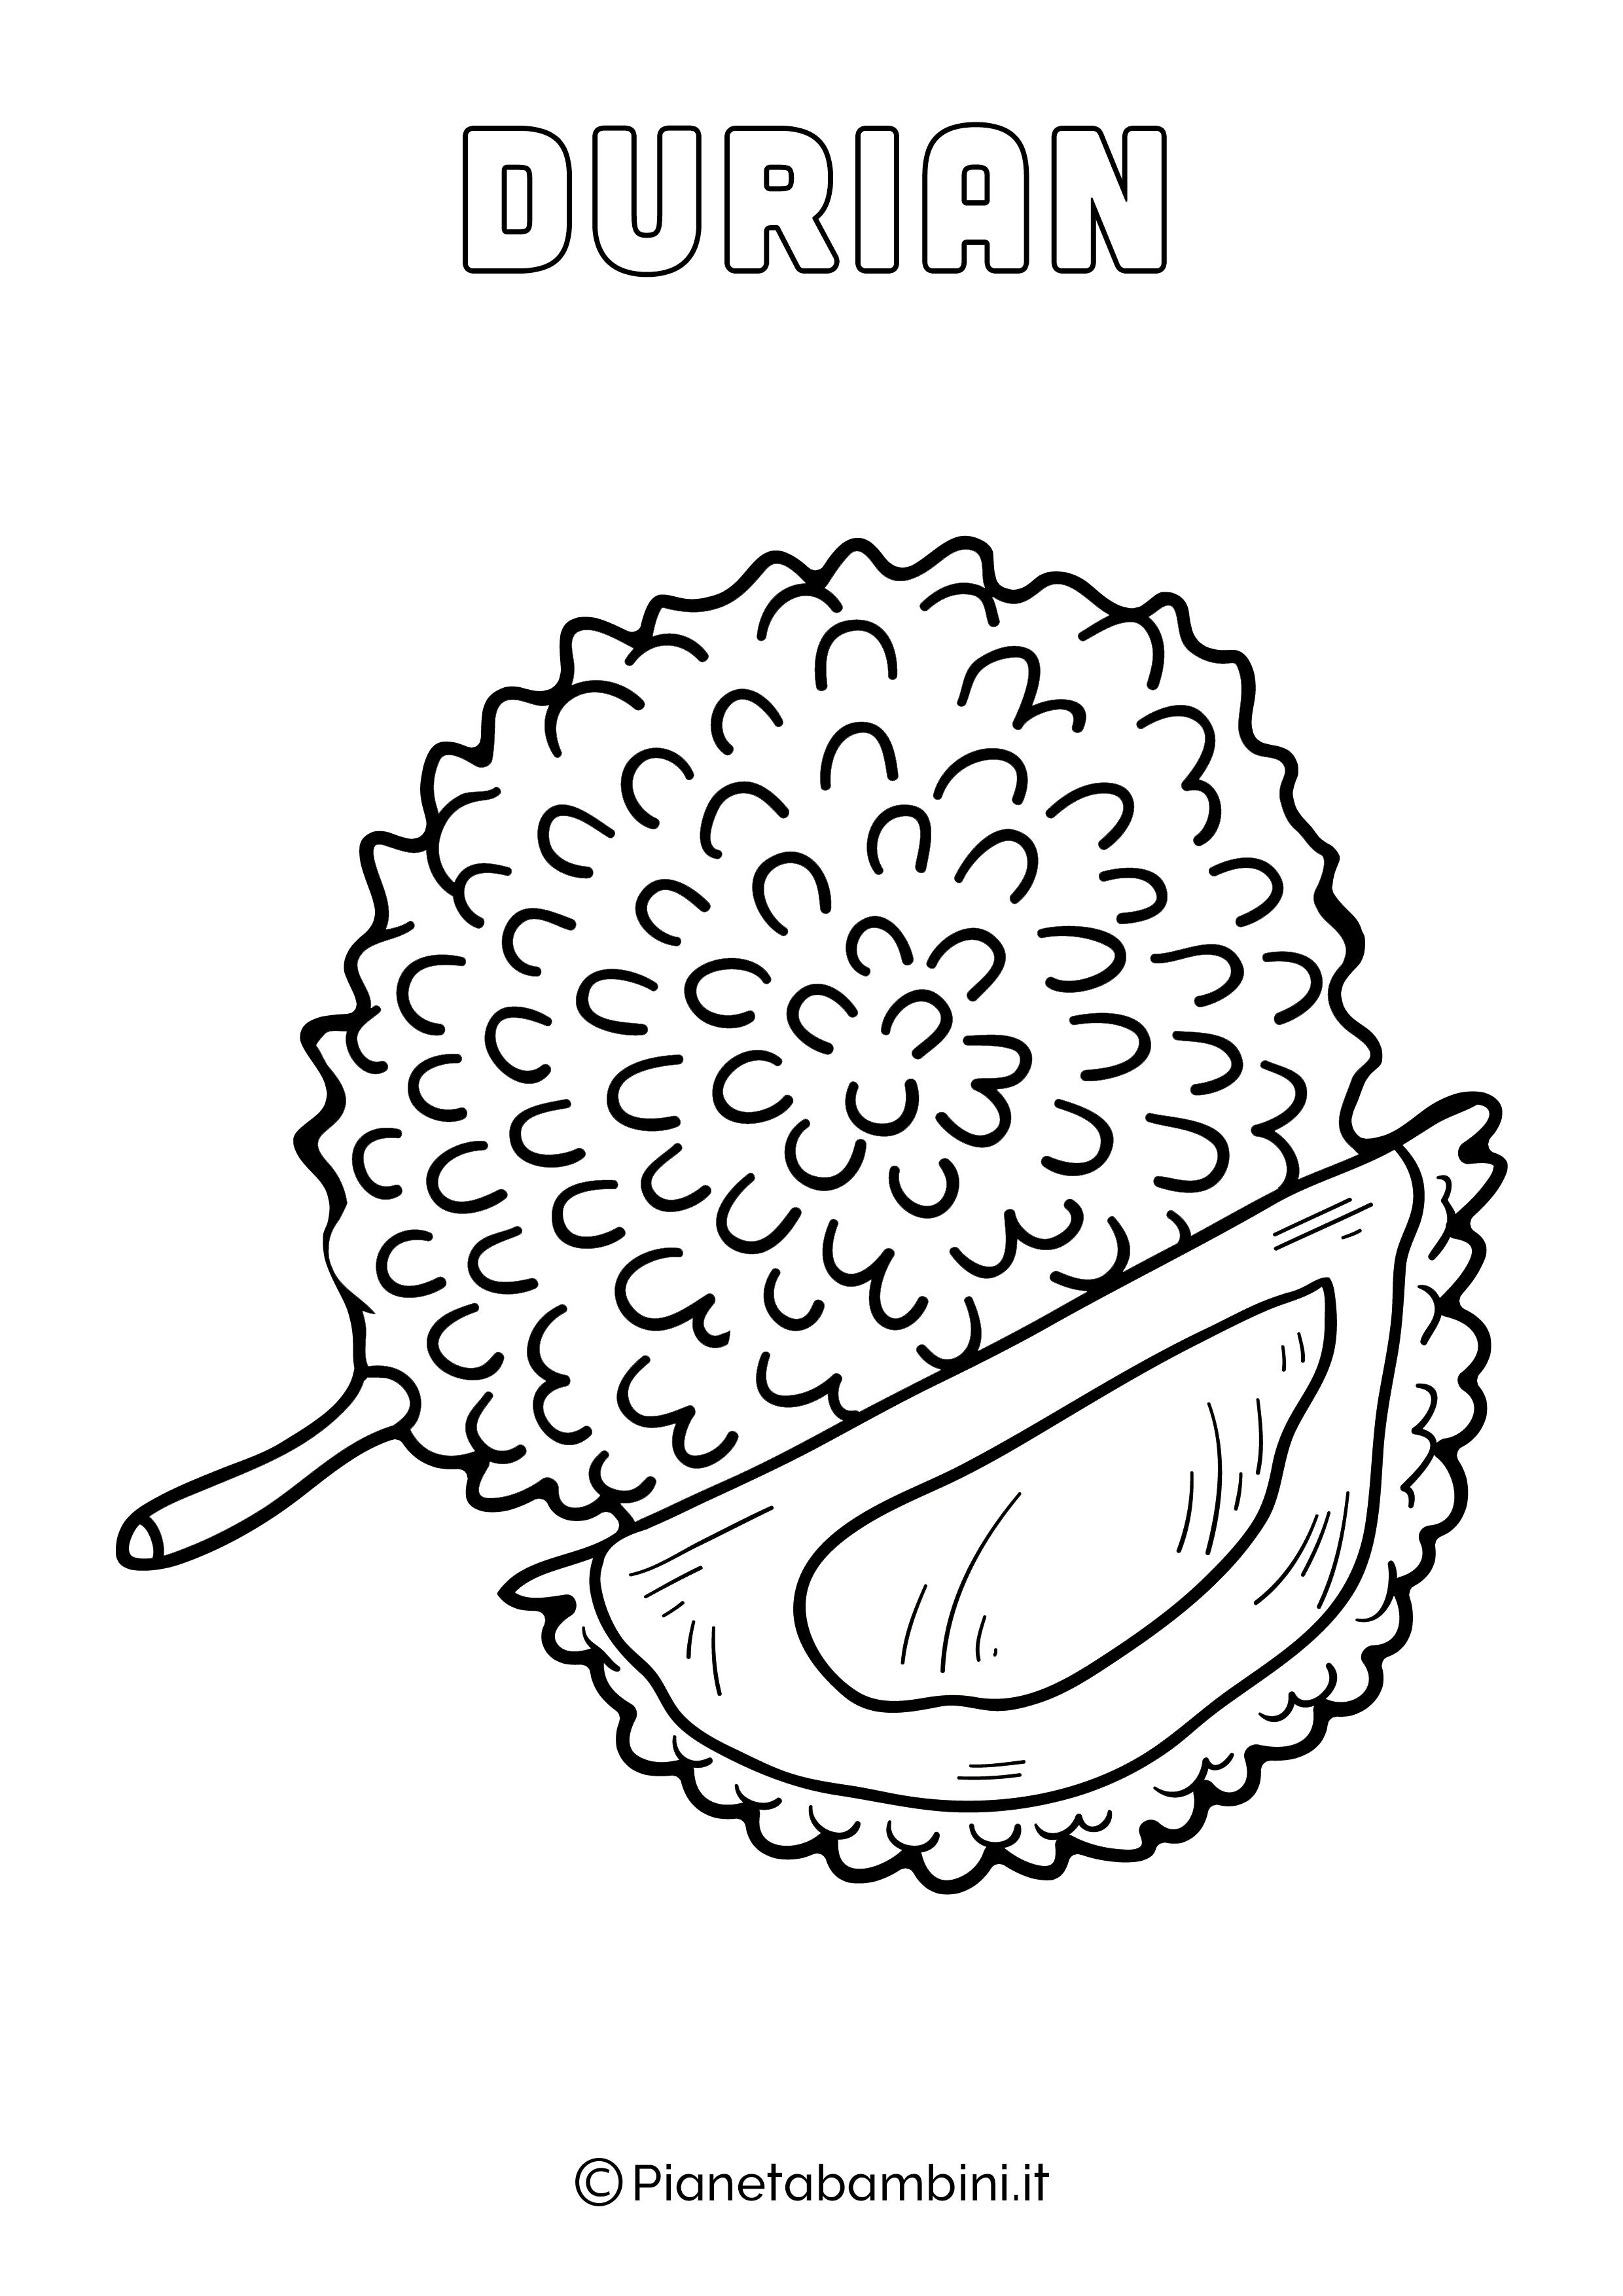 Durian da stampare e colorare